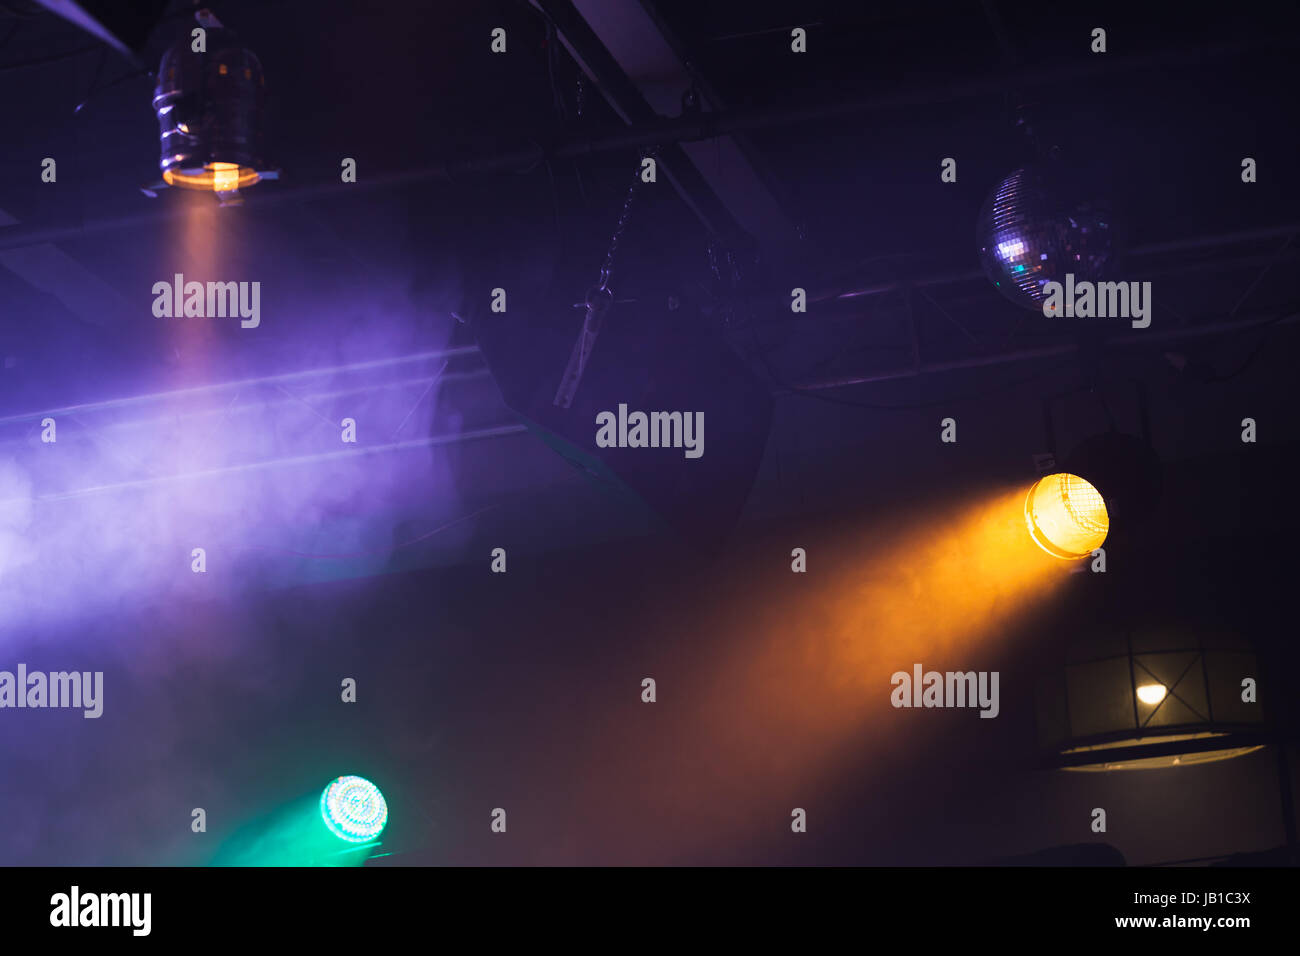 Luci spot su sfondo scuro, musica rock concert stadio apparecchiature di illuminazione Foto Stock